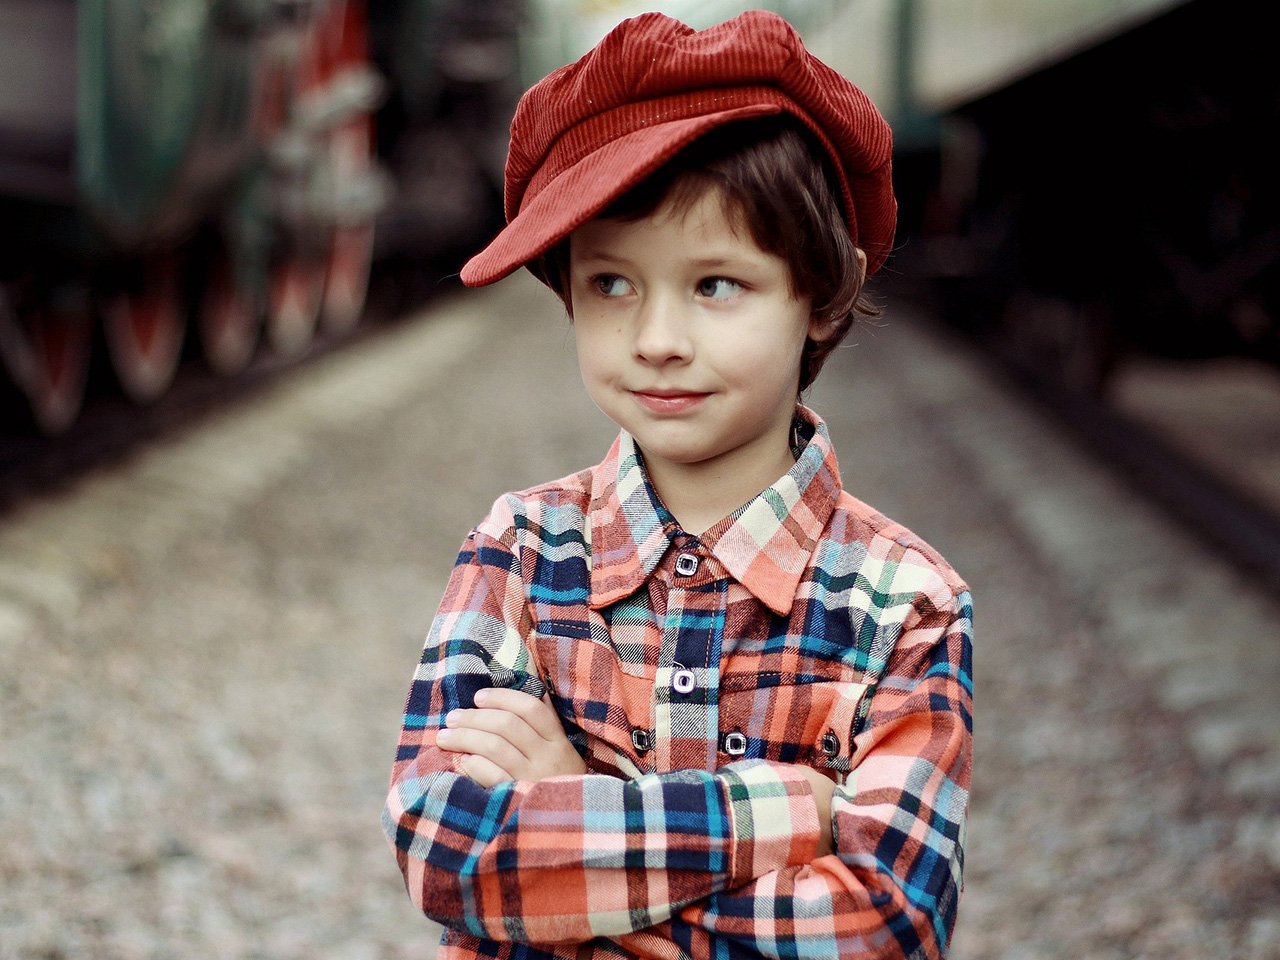 Dječačić u kariranoj košulji i s crvenom kapom na glavi.